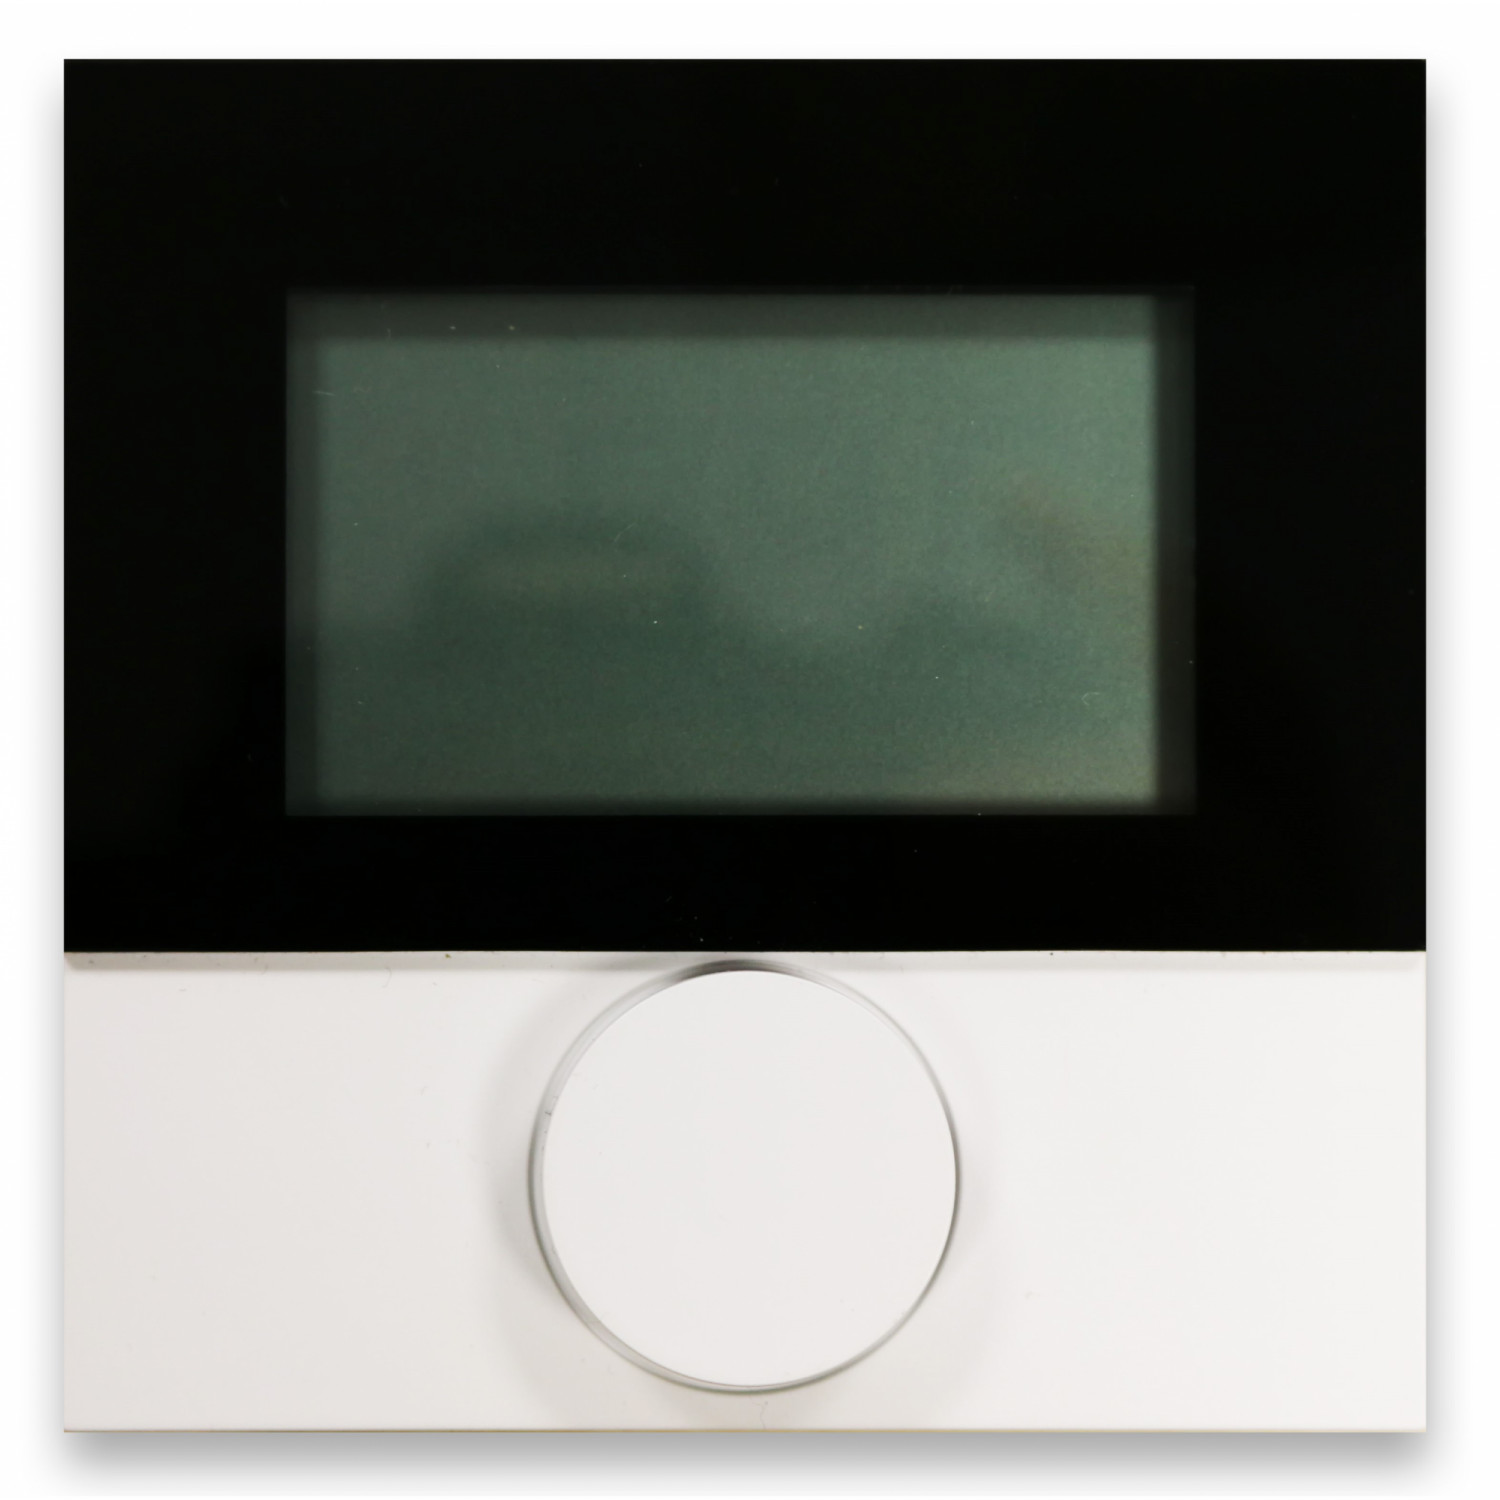 IT Raumbediengerät Funk LCD mit Fernfühler Heizen/Kühlen, 5-30 °C